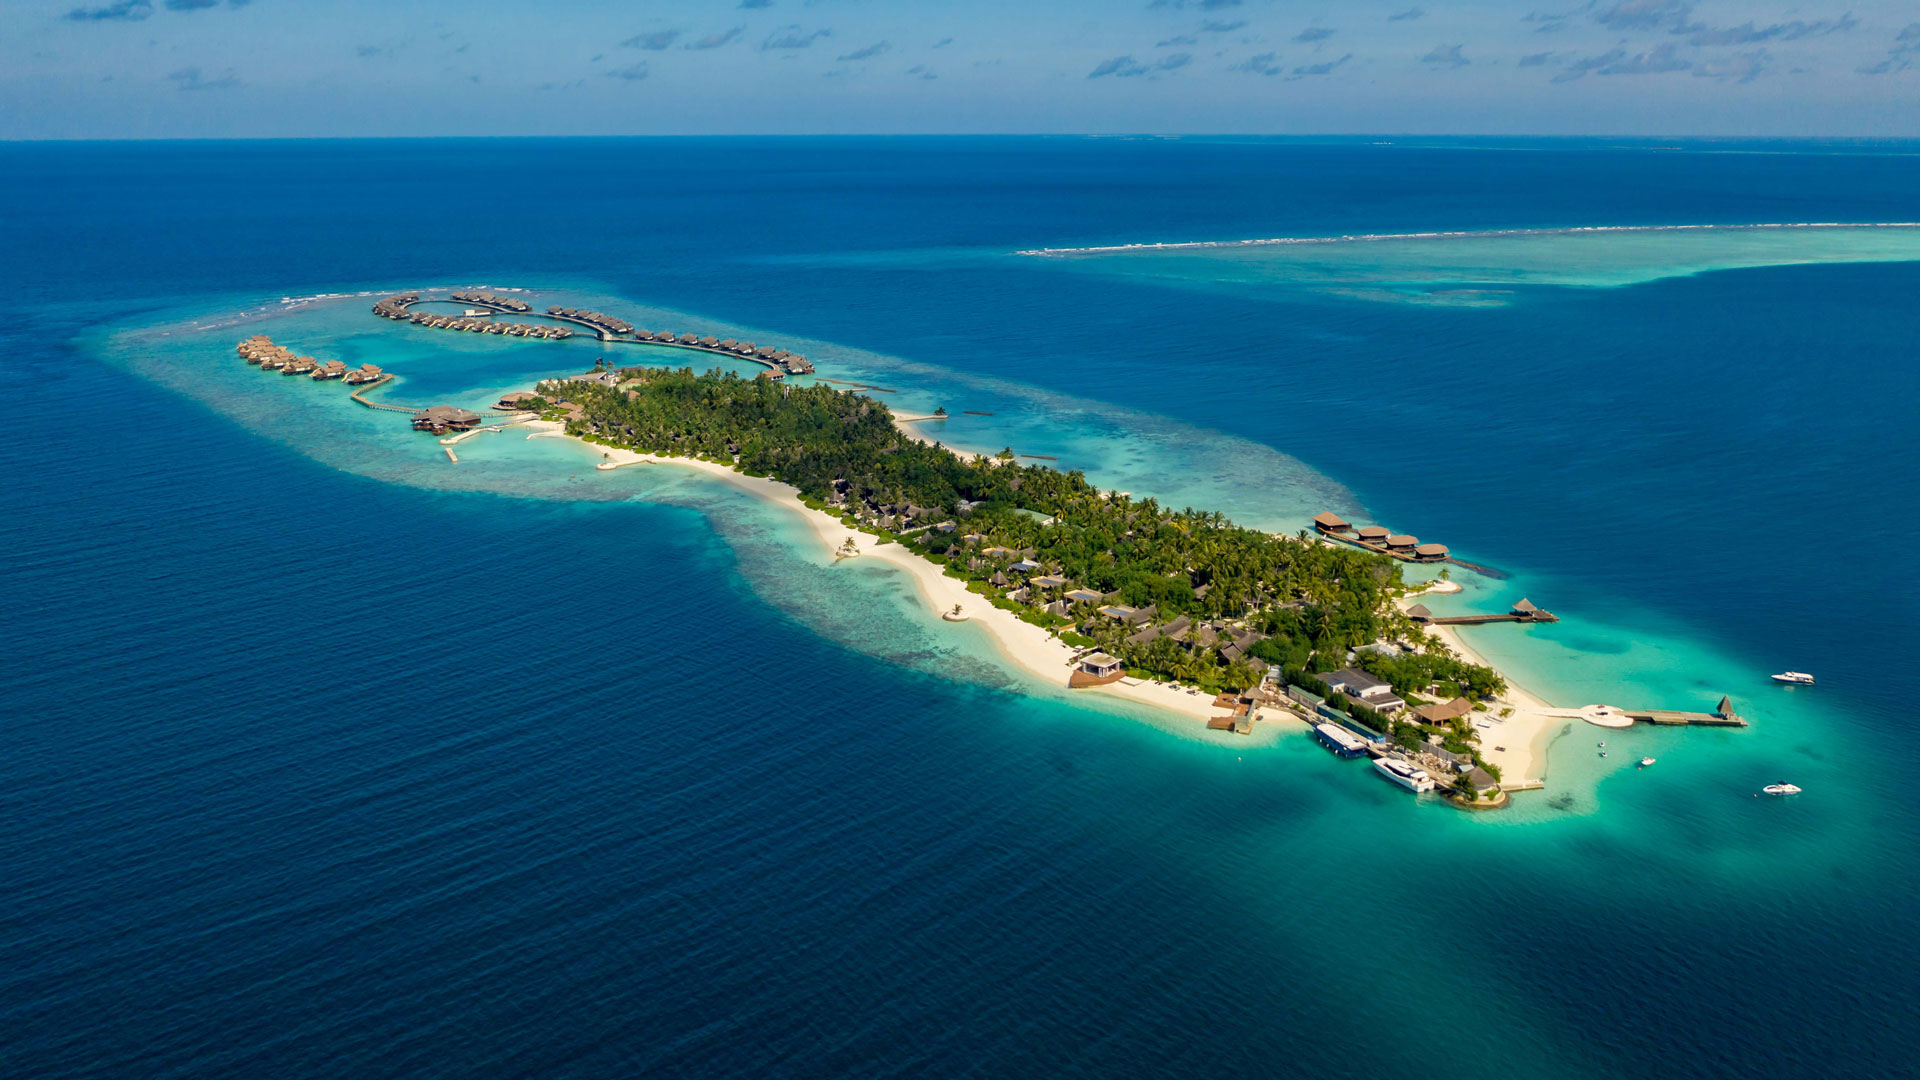 馬爾地夫總共有多少家度假村?答案是166家度假村